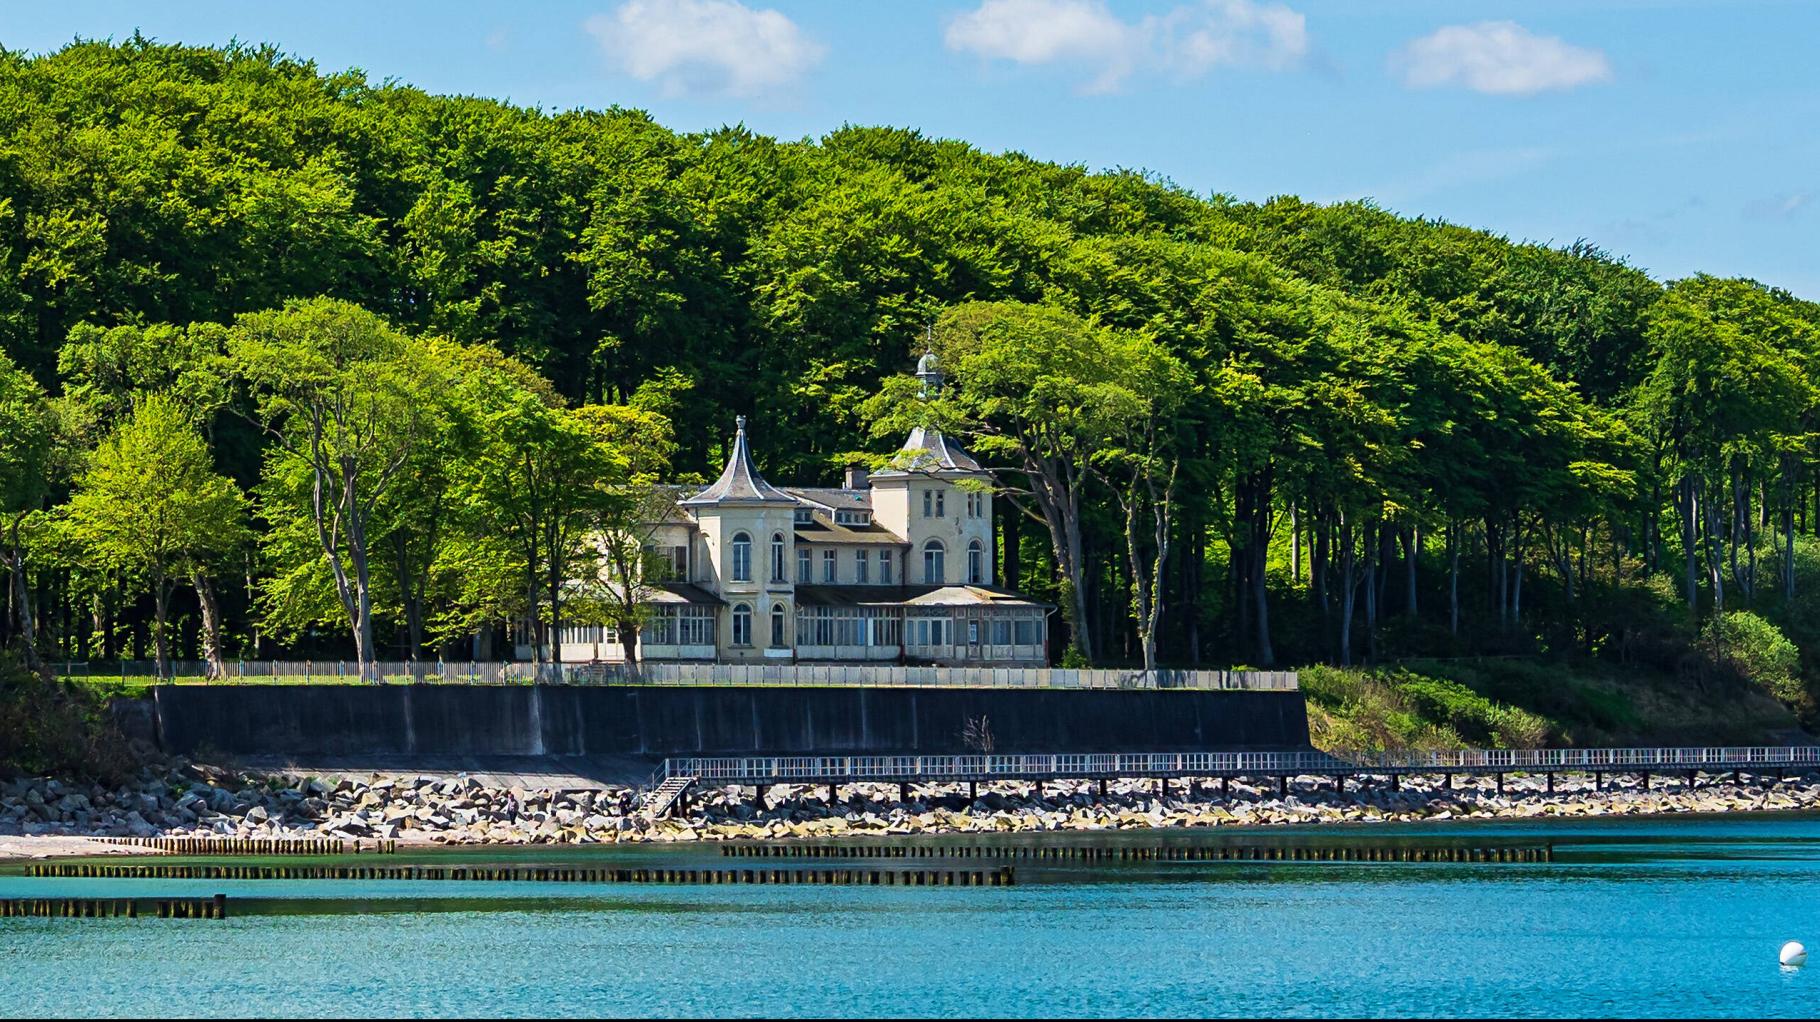 40 Millionen Euro: An der Ostsee in MV steht die teuerste Villa in Deutschland zum Verkauf